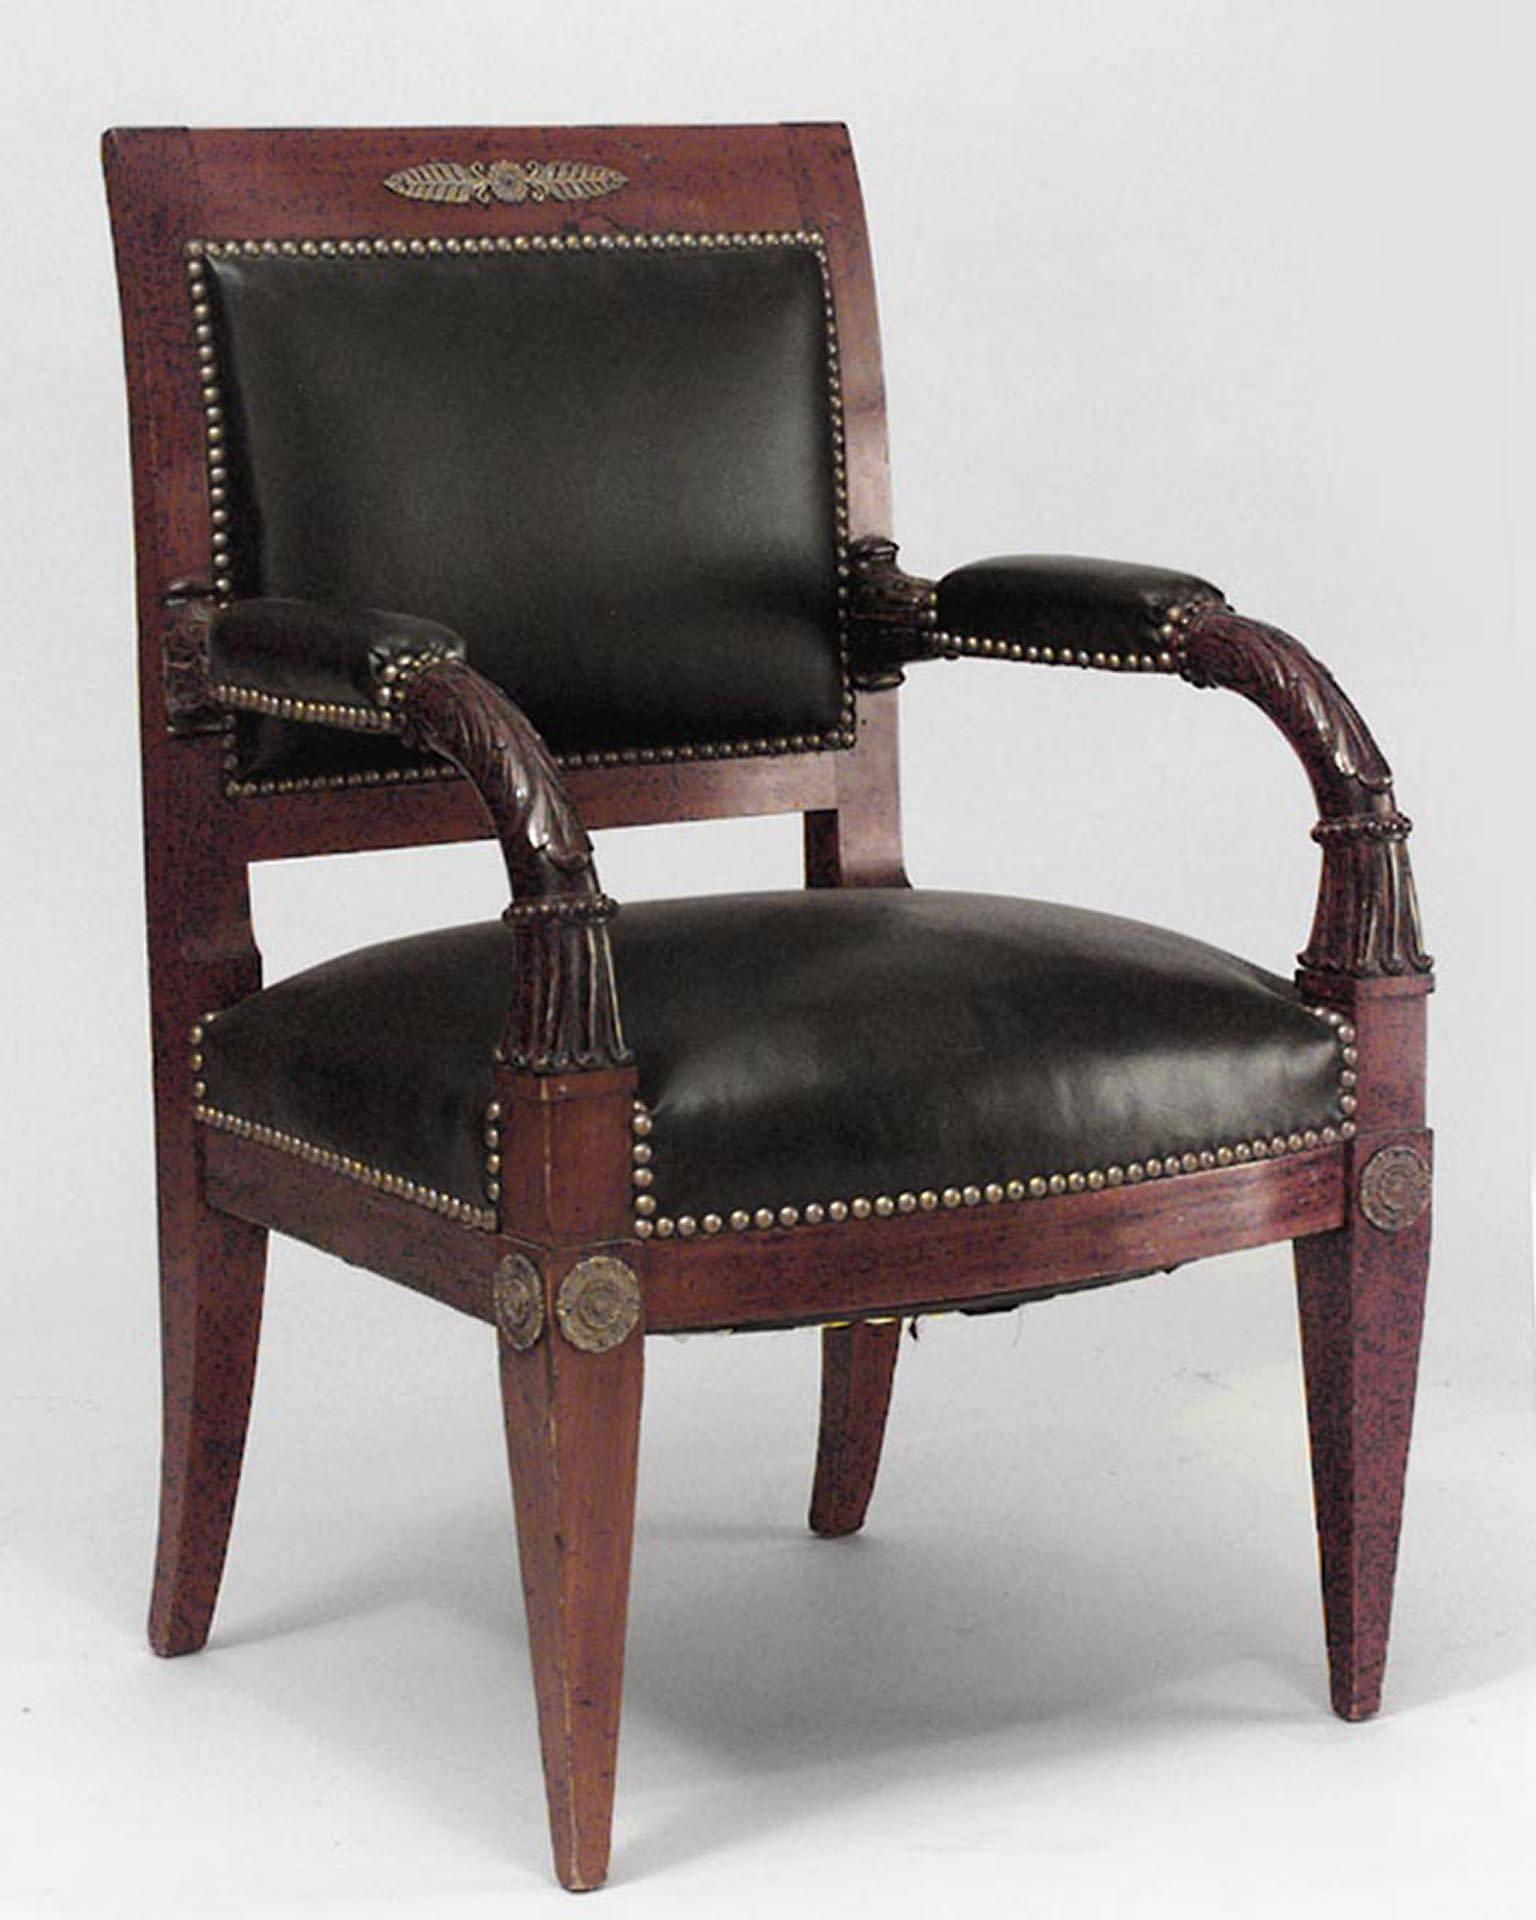 Paire de fauteuils de style Empire français (19e siècle) en acajou et garnis de bronze, avec assise et dossier en cuir noir.
